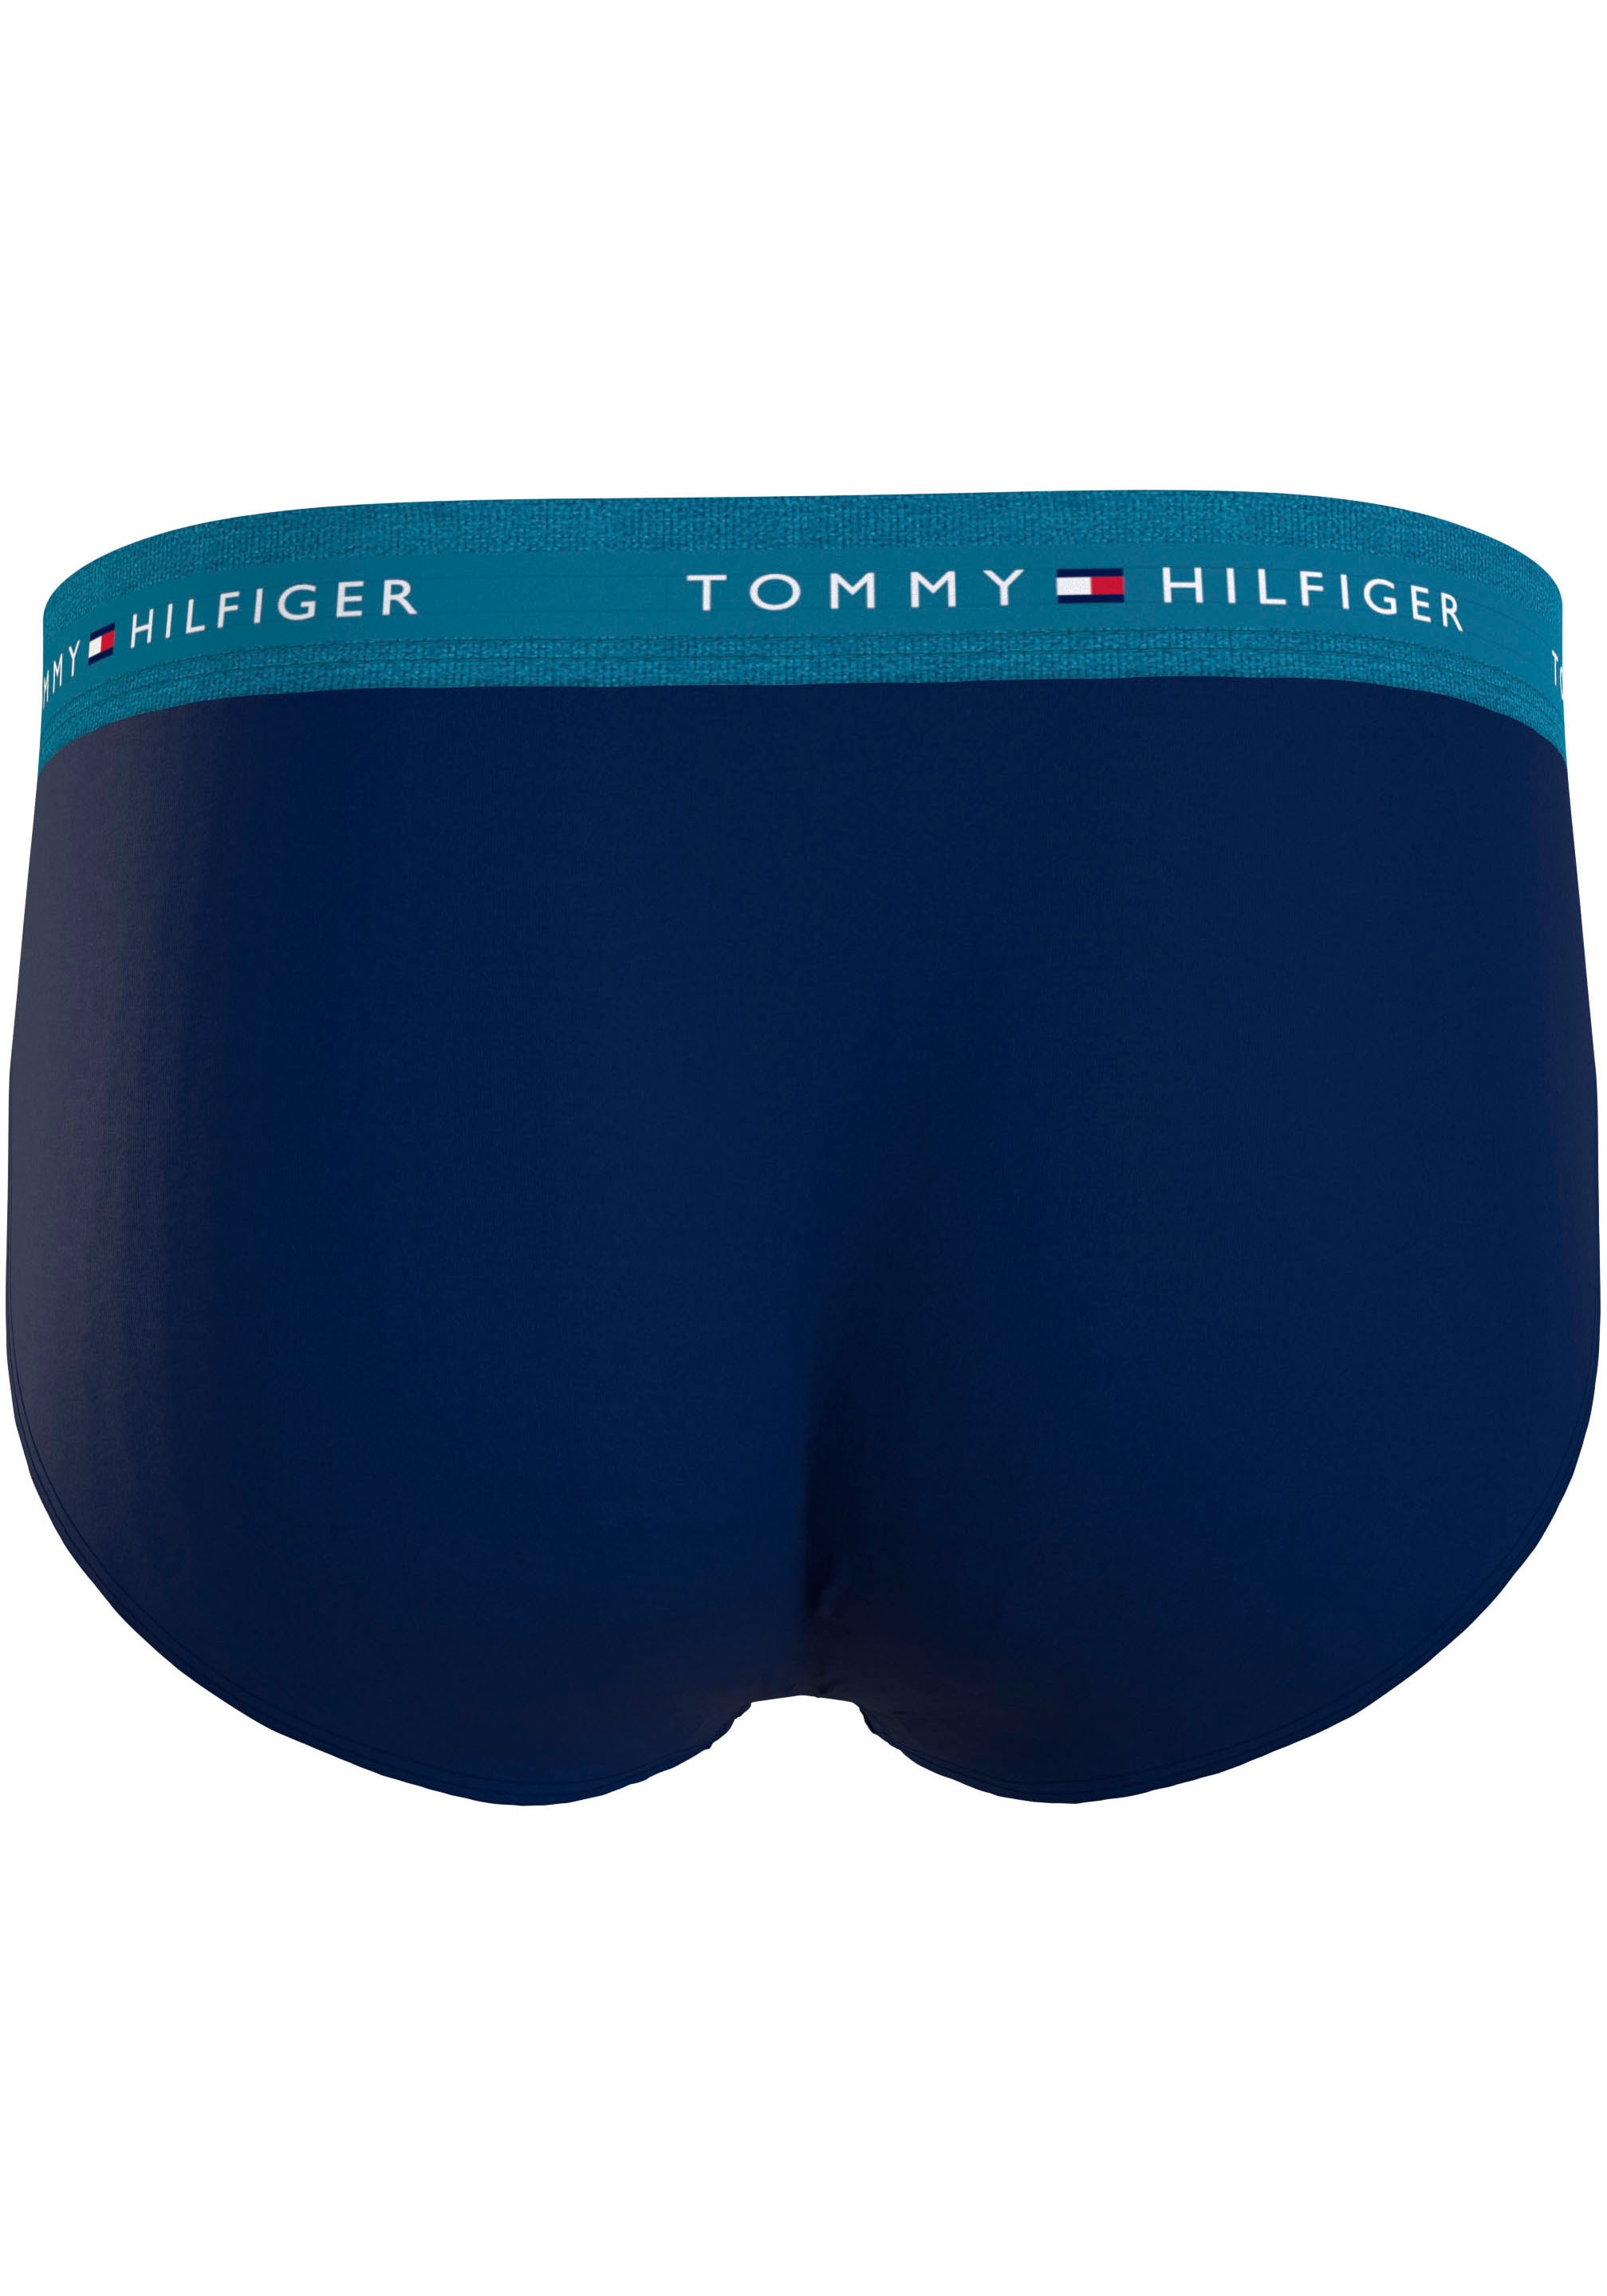 Tommy Hilfiger Damen 3er Pack Slips Unterwäsche : : Fashion